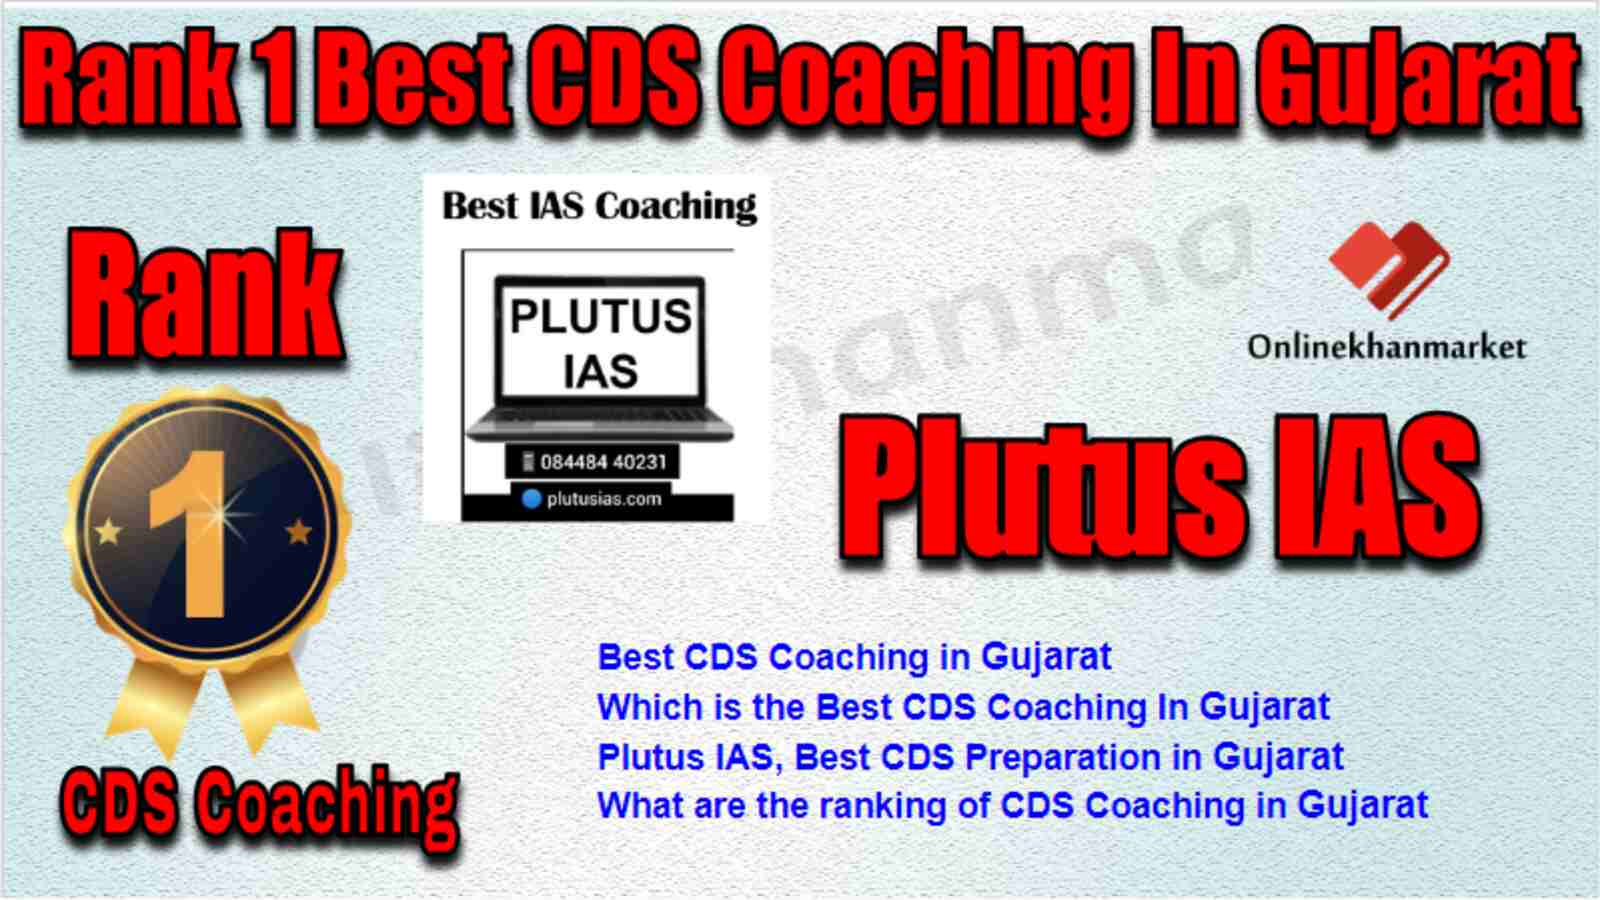 Rank 1 Best CDS Coaching in Gujarat